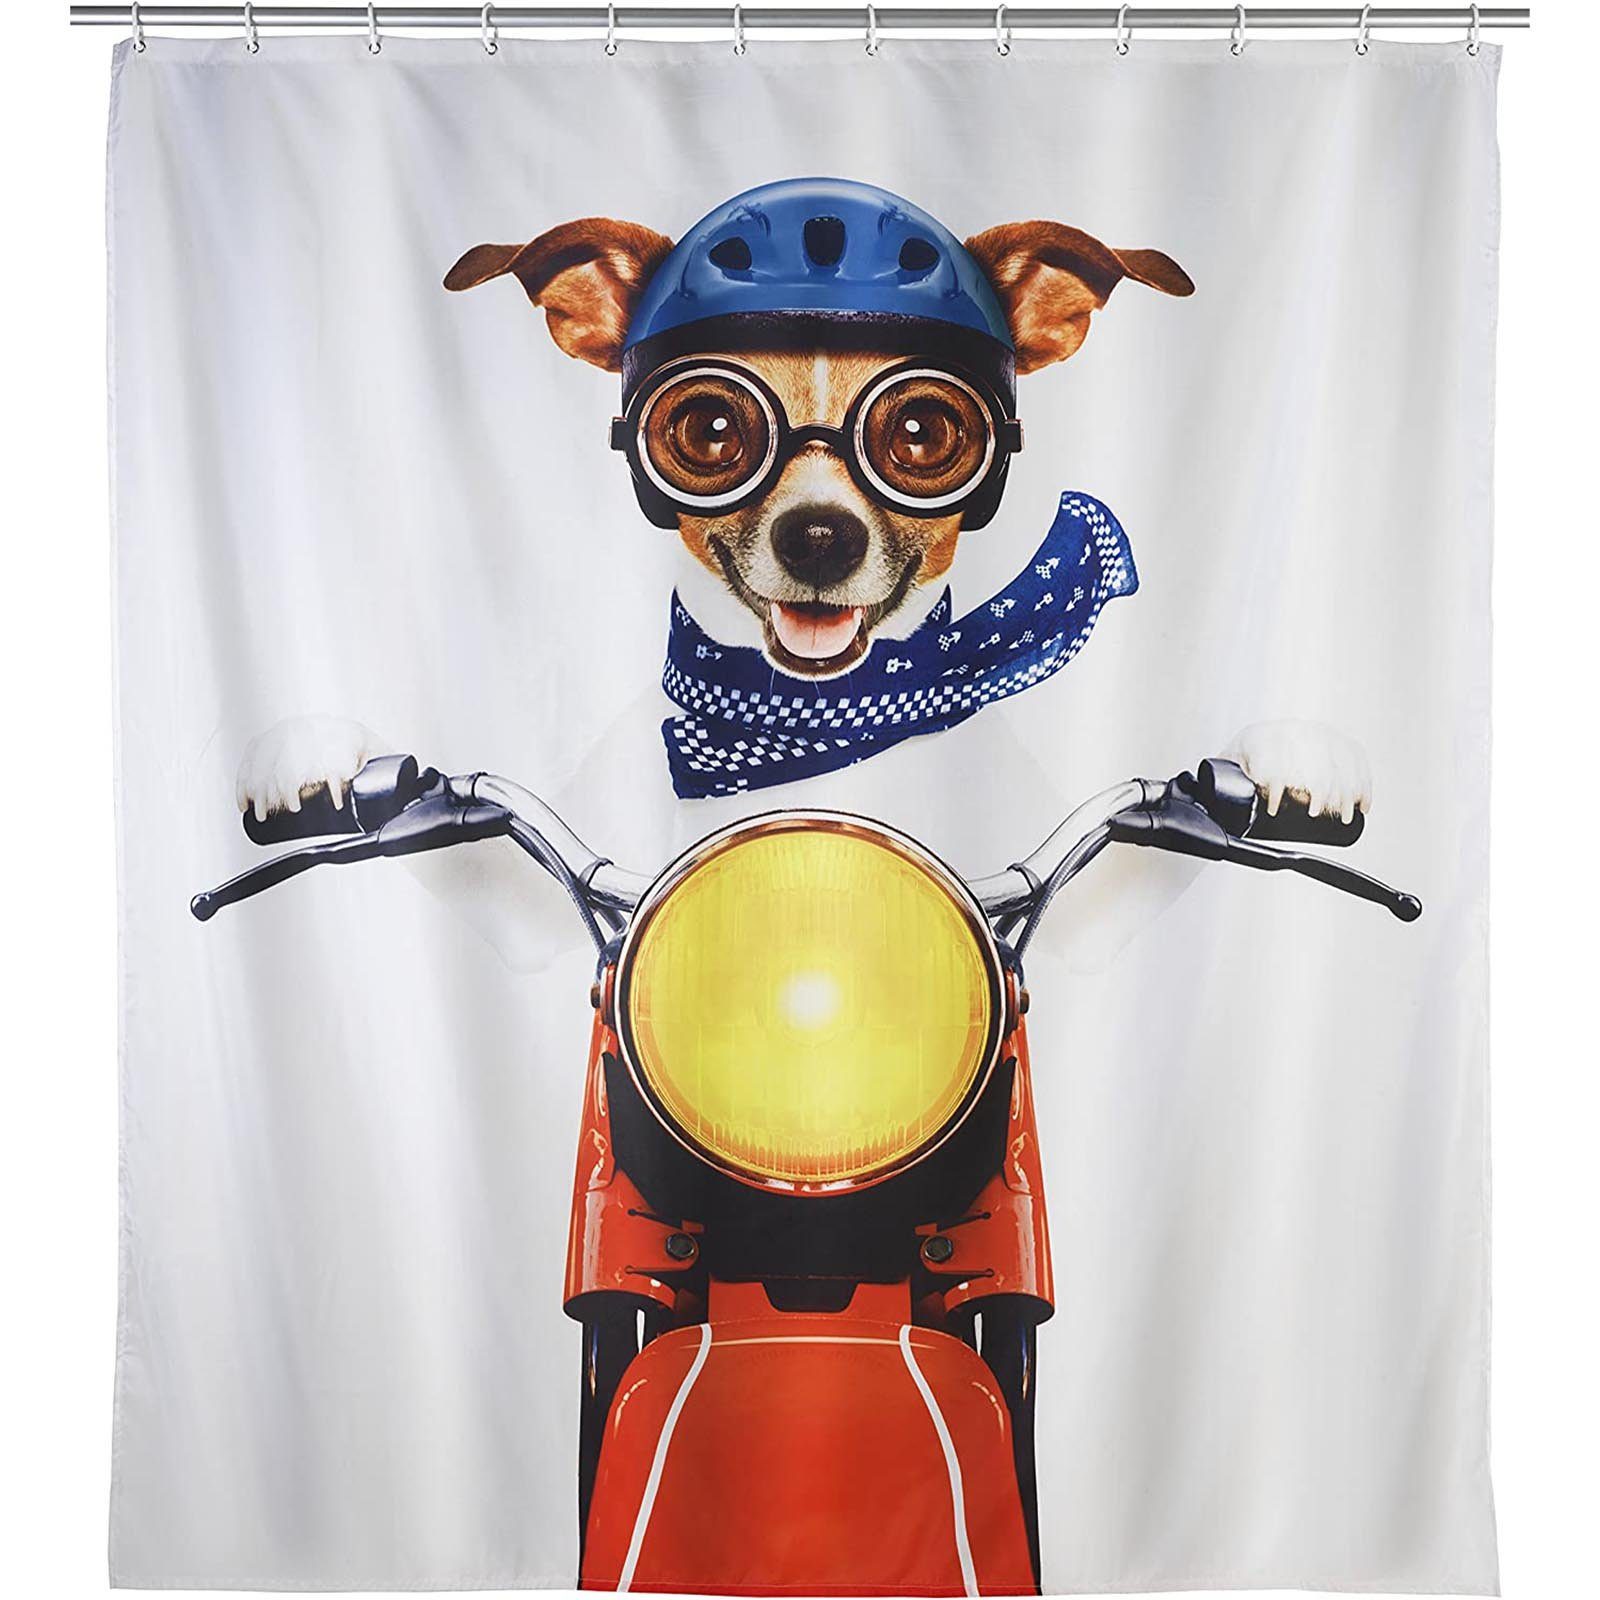 WENKO Duschvorhang Wannenvorhang Badewannenvorhang Biker Dog Breite 180 cm,  180 x 200 cm mit 12 Duschvorhangringen, Aus 100 % Polyester, bei 30°C  waschbar, besonders haltbar und pflegeleicht